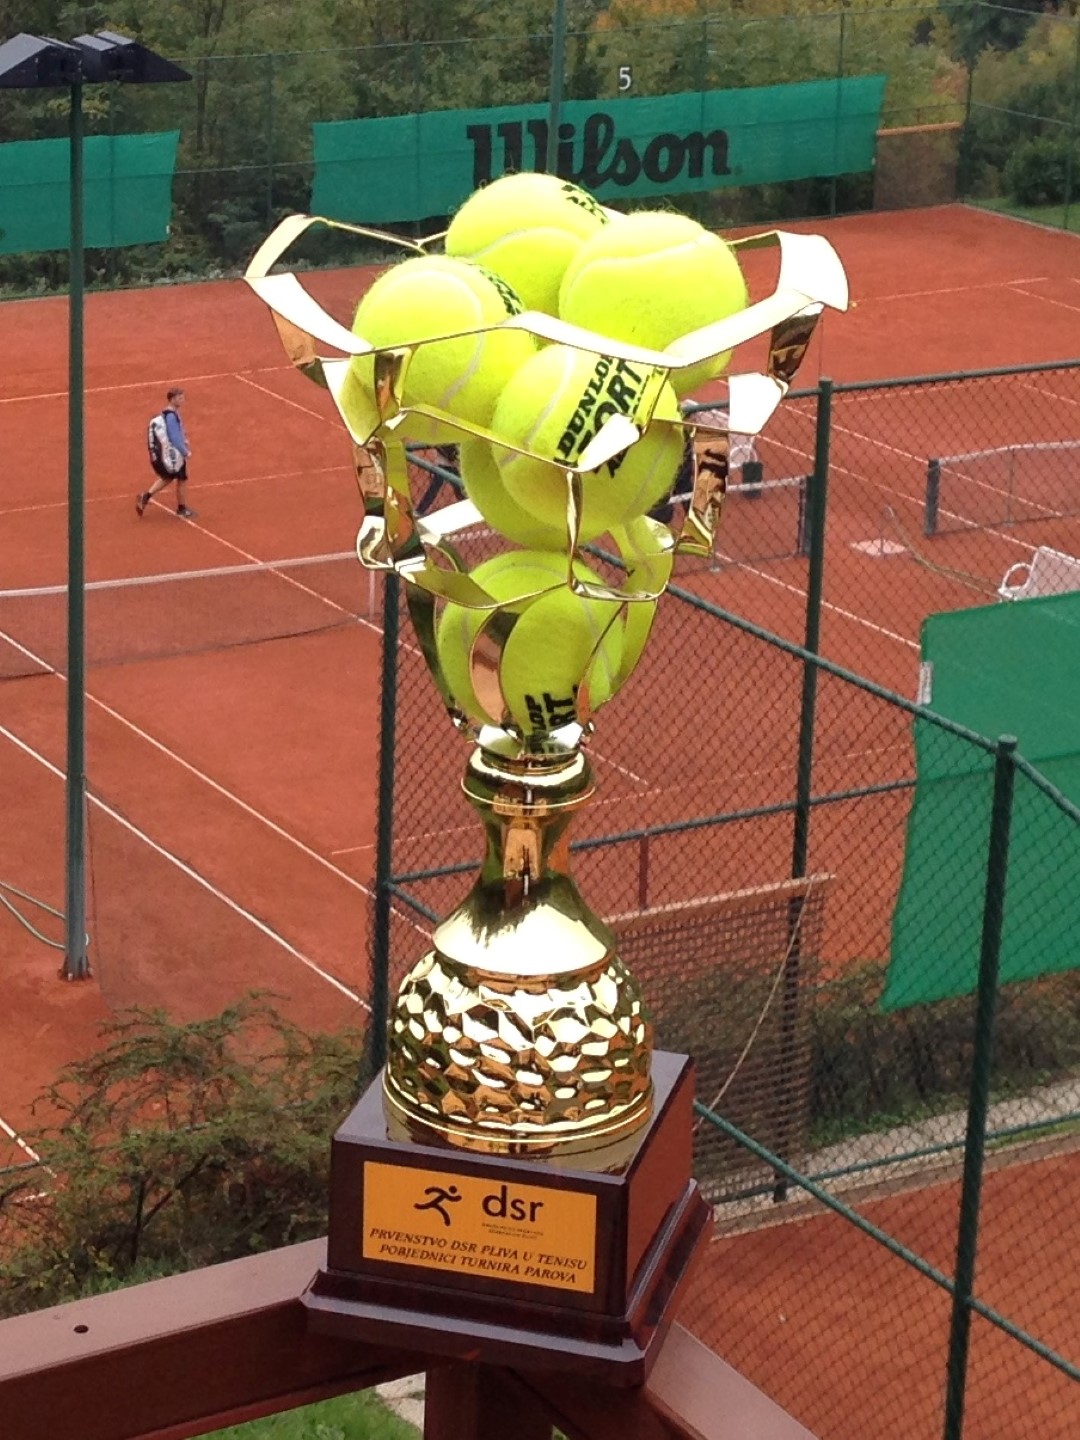 Završeno Prvenstvo DSR PLIVA u tenisu za 2017. godinu!